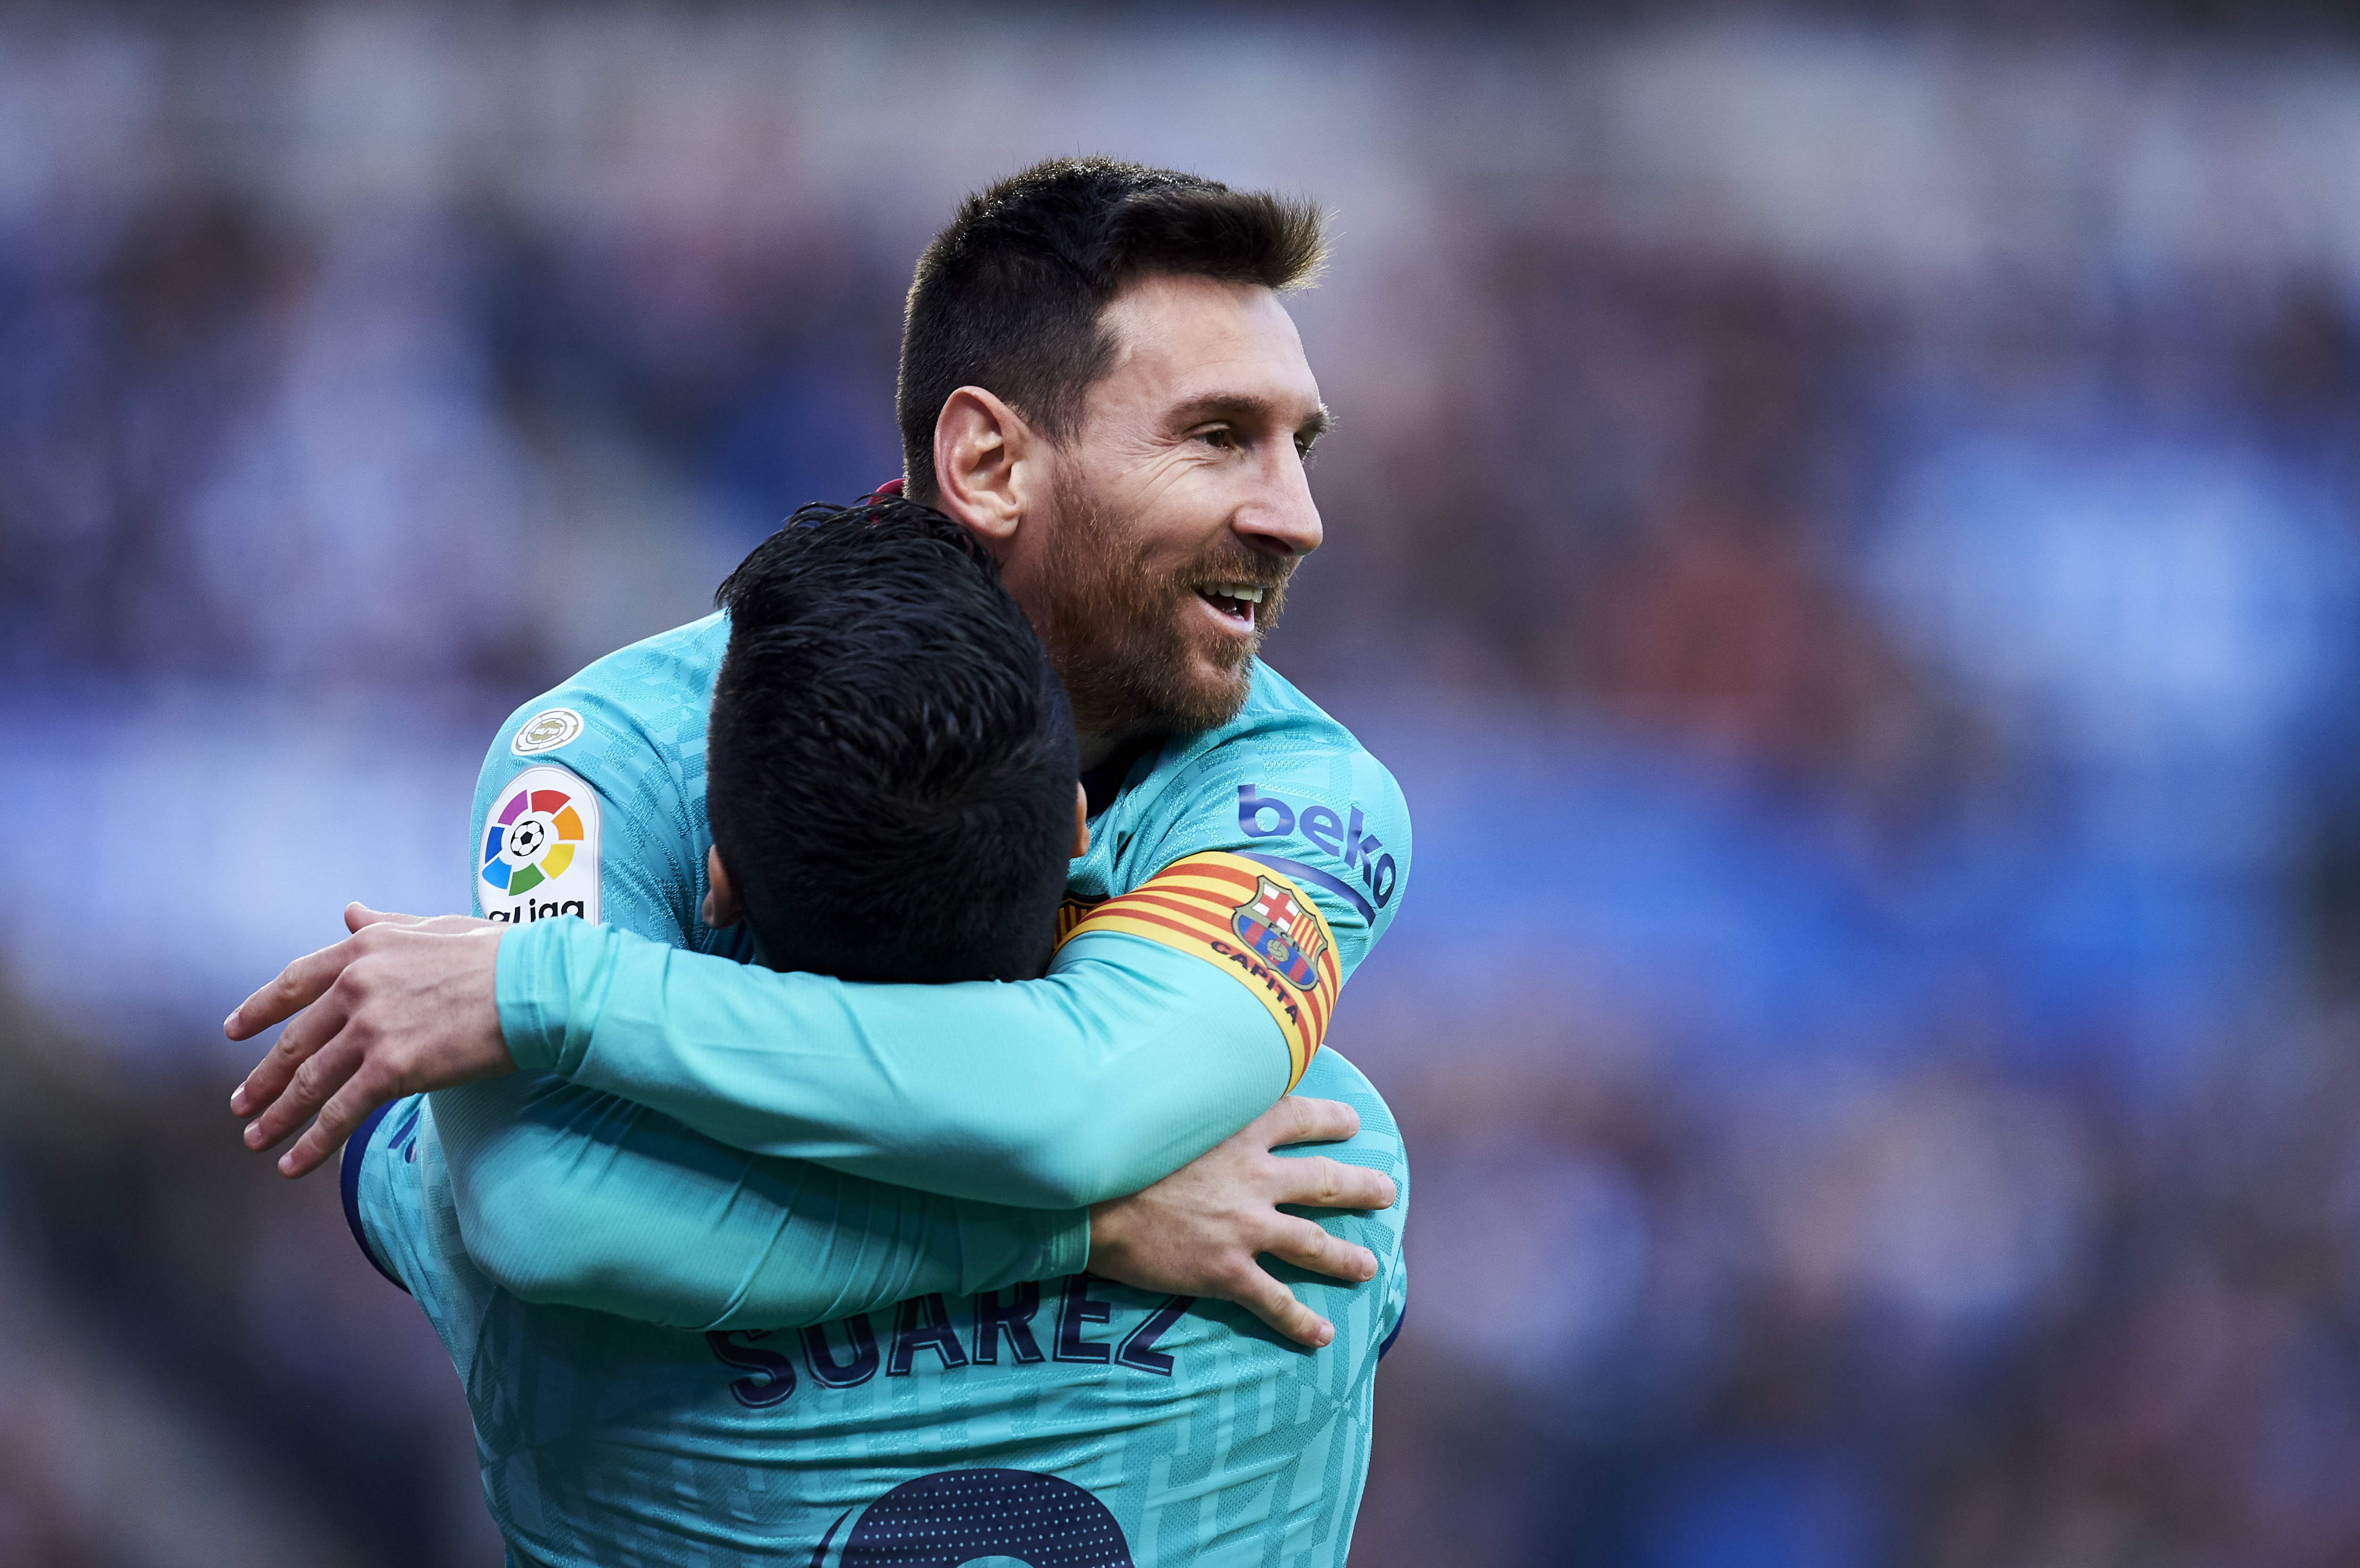 Lionel Messi și Luis Suarez vor să joace din nou în aceleași culori! Echipa care le poate transforma visul în realitate